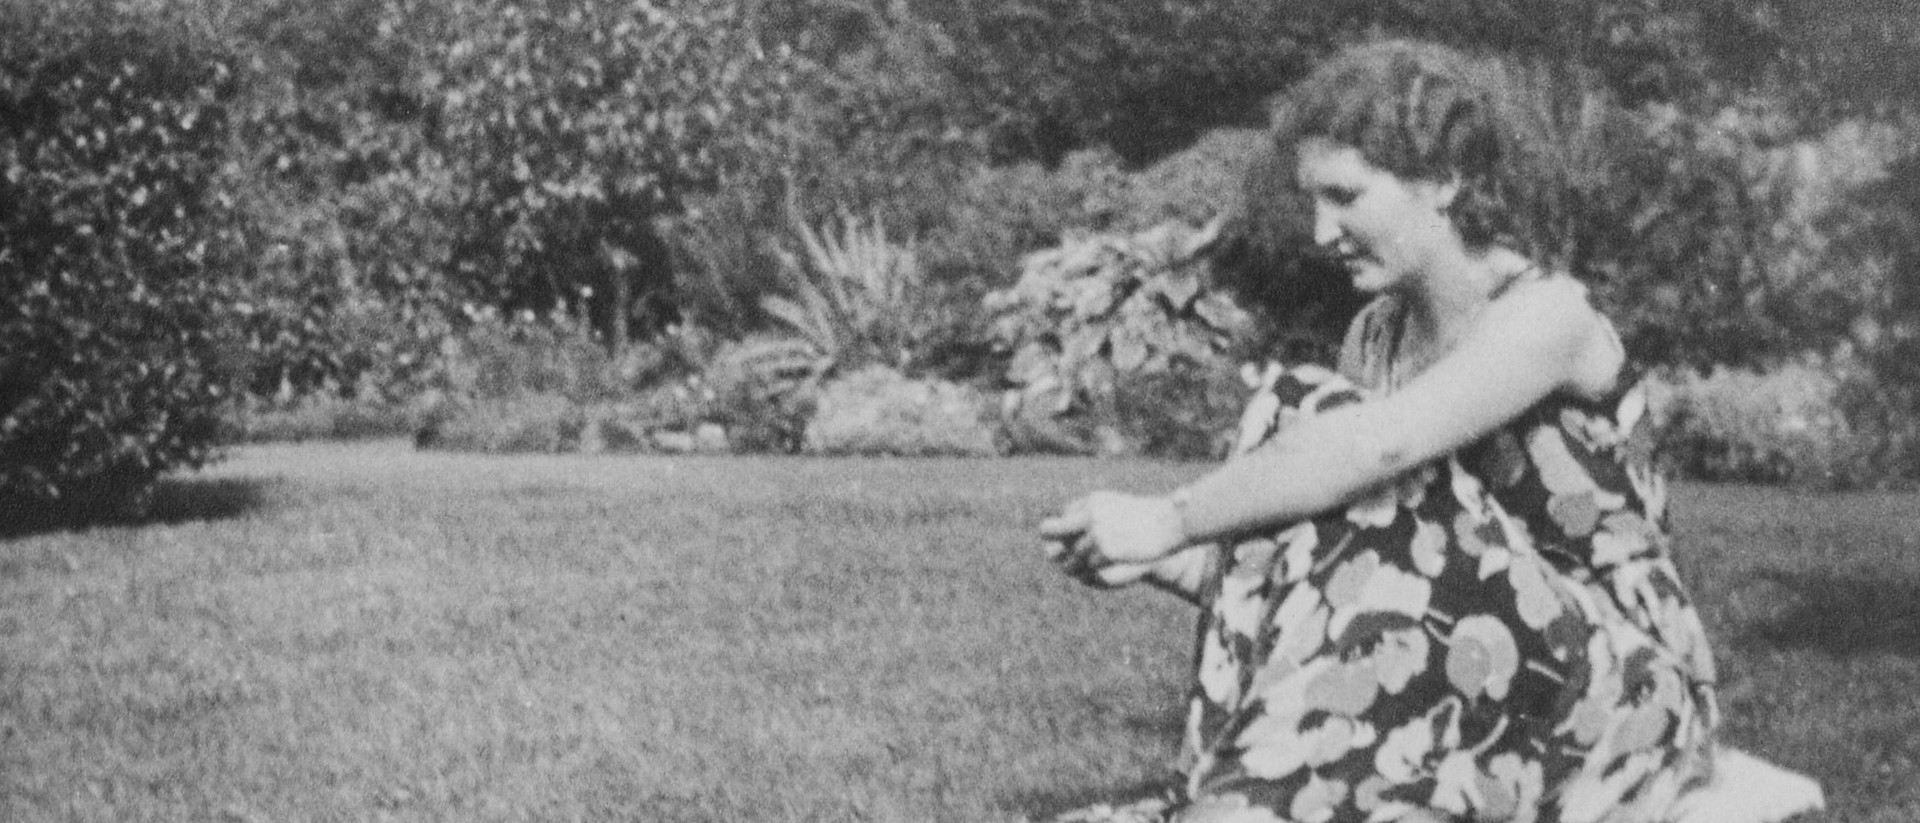 Hilde Bonhage im grossen Garten ihres Dortmunder Elternhauses, etwa 1931